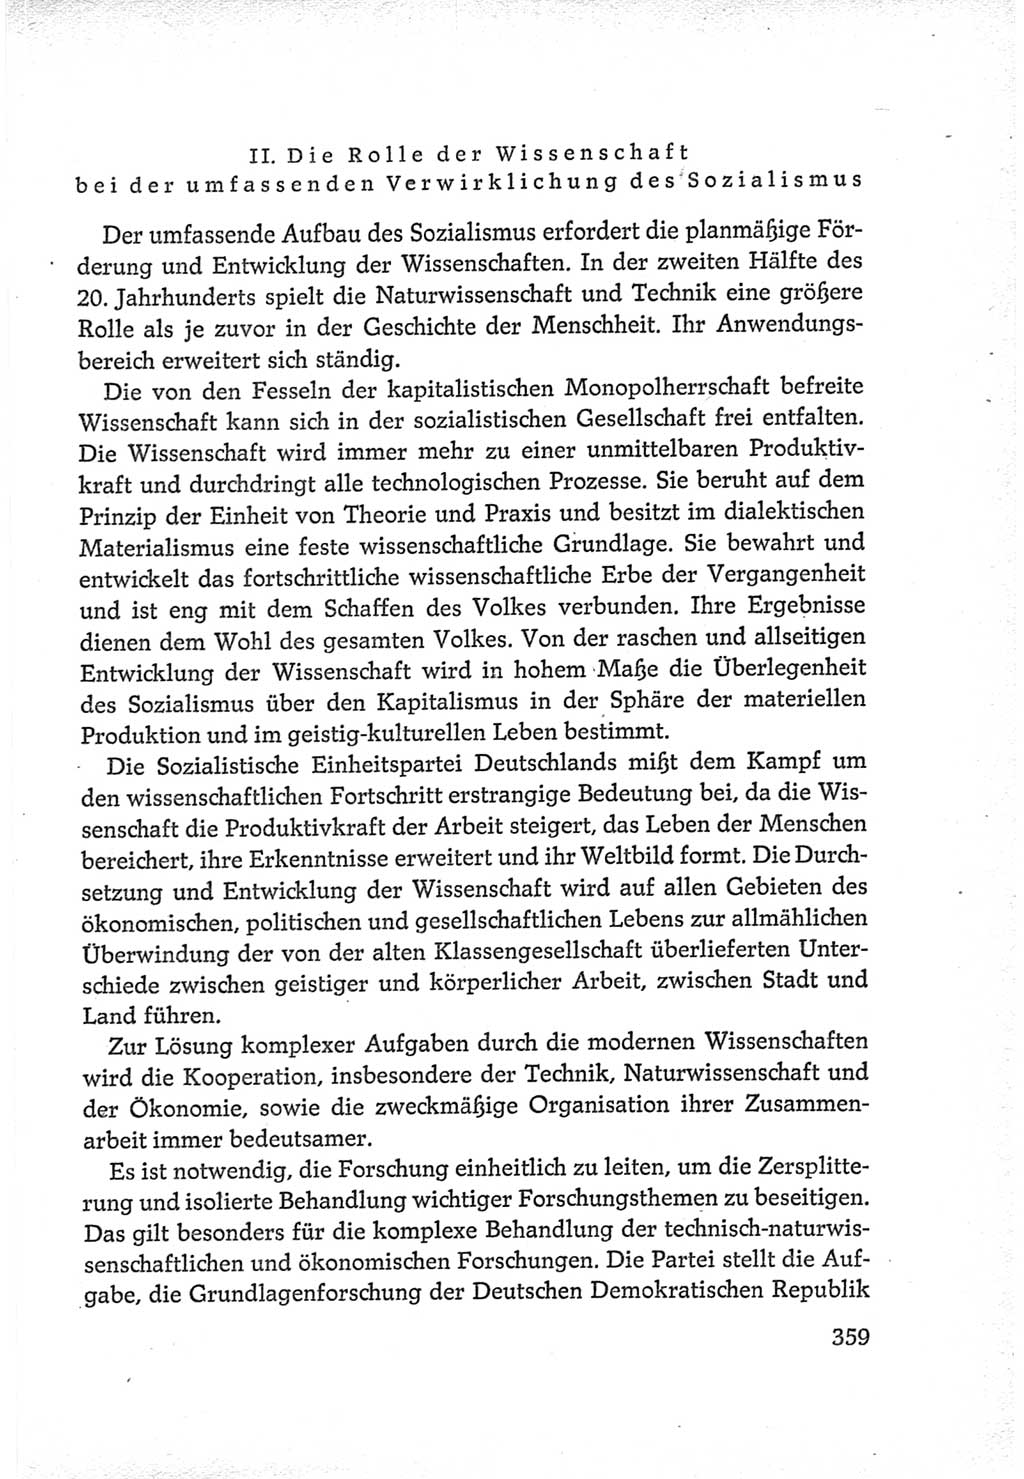 Protokoll der Verhandlungen des Ⅵ. Parteitages der Sozialistischen Einheitspartei Deutschlands (SED) [Deutsche Demokratische Republik (DDR)] 1963, Band Ⅳ, Seite 359 (Prot. Verh. Ⅵ. PT SED DDR 1963, Bd. Ⅳ, S. 359)